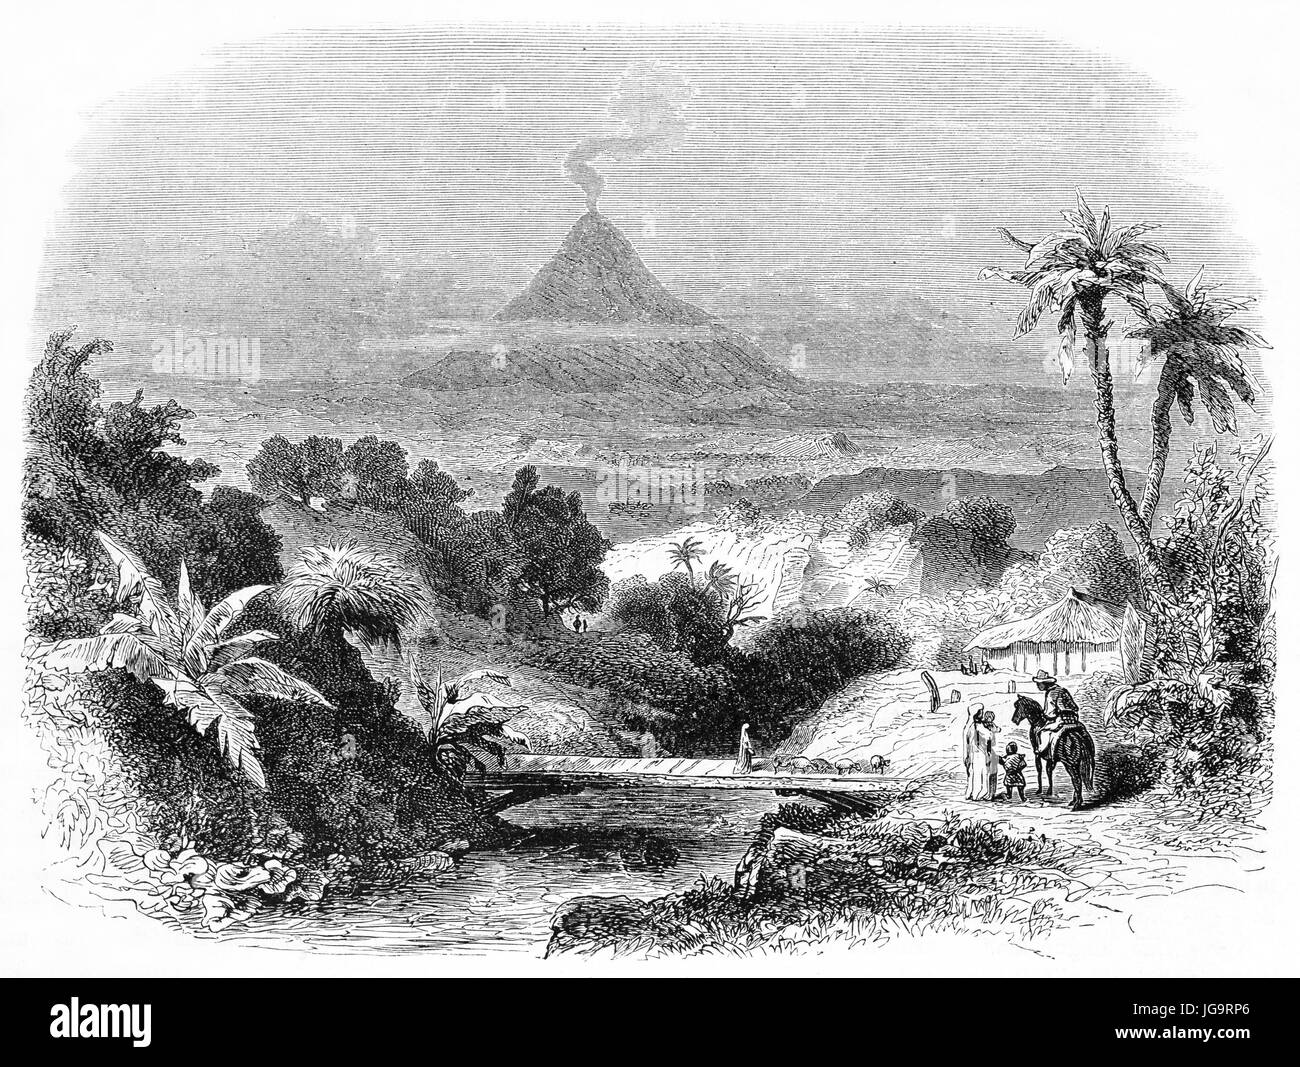 Mexikanische Landschaft mit Vegetation und Pico de Orizaba rauchenden Vulkan im Hintergrund Entfernung. Alte graue Ton Radierung Stil Kunst von Francais, 1861 Stockfoto